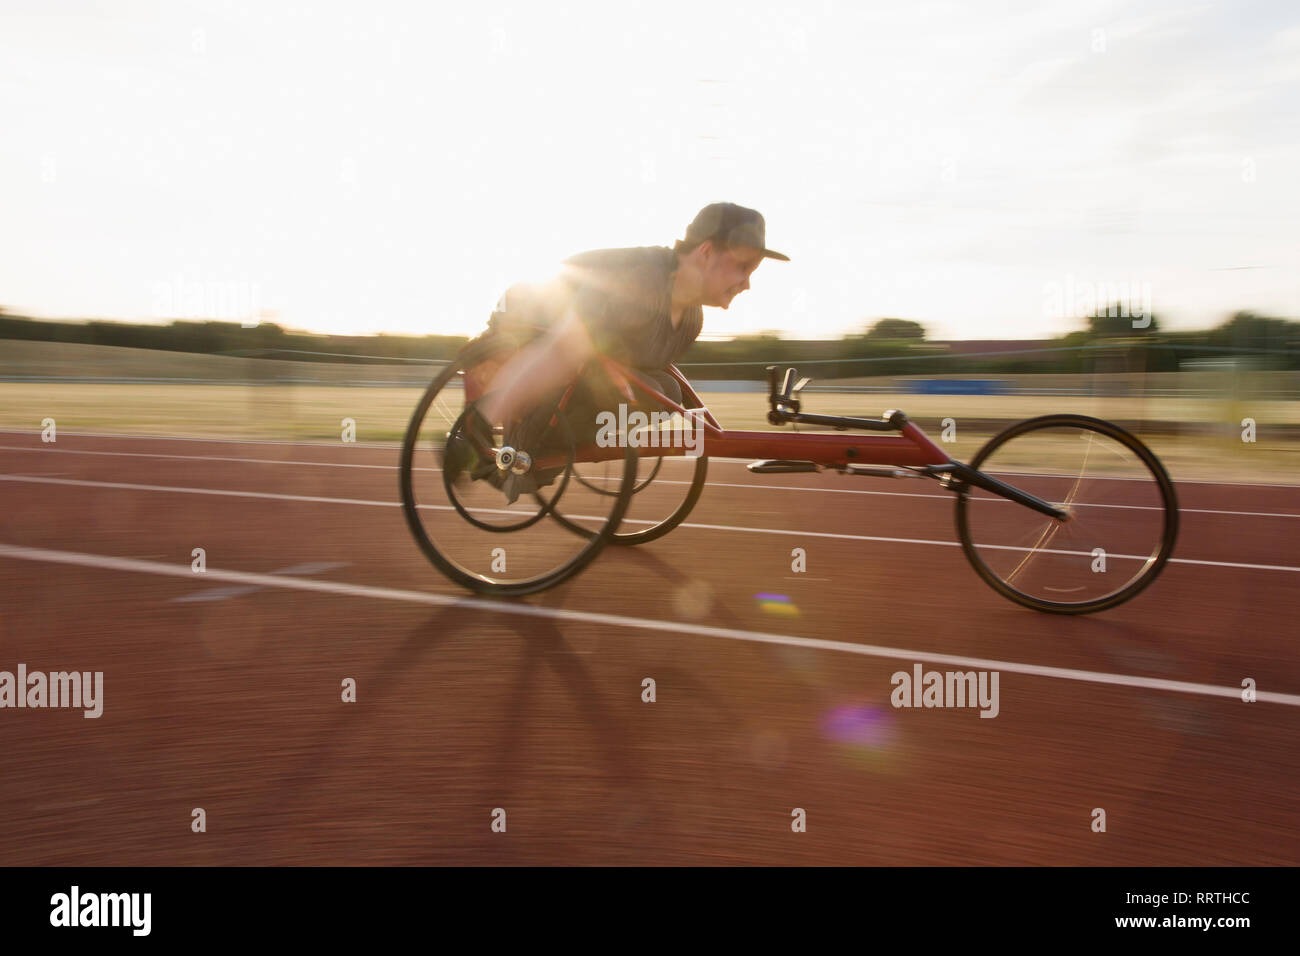 Bestimmt Teenager paraplegic Athlet Beschleunigung zusammen Sport Track im Rollstuhl Rennen Stockfoto